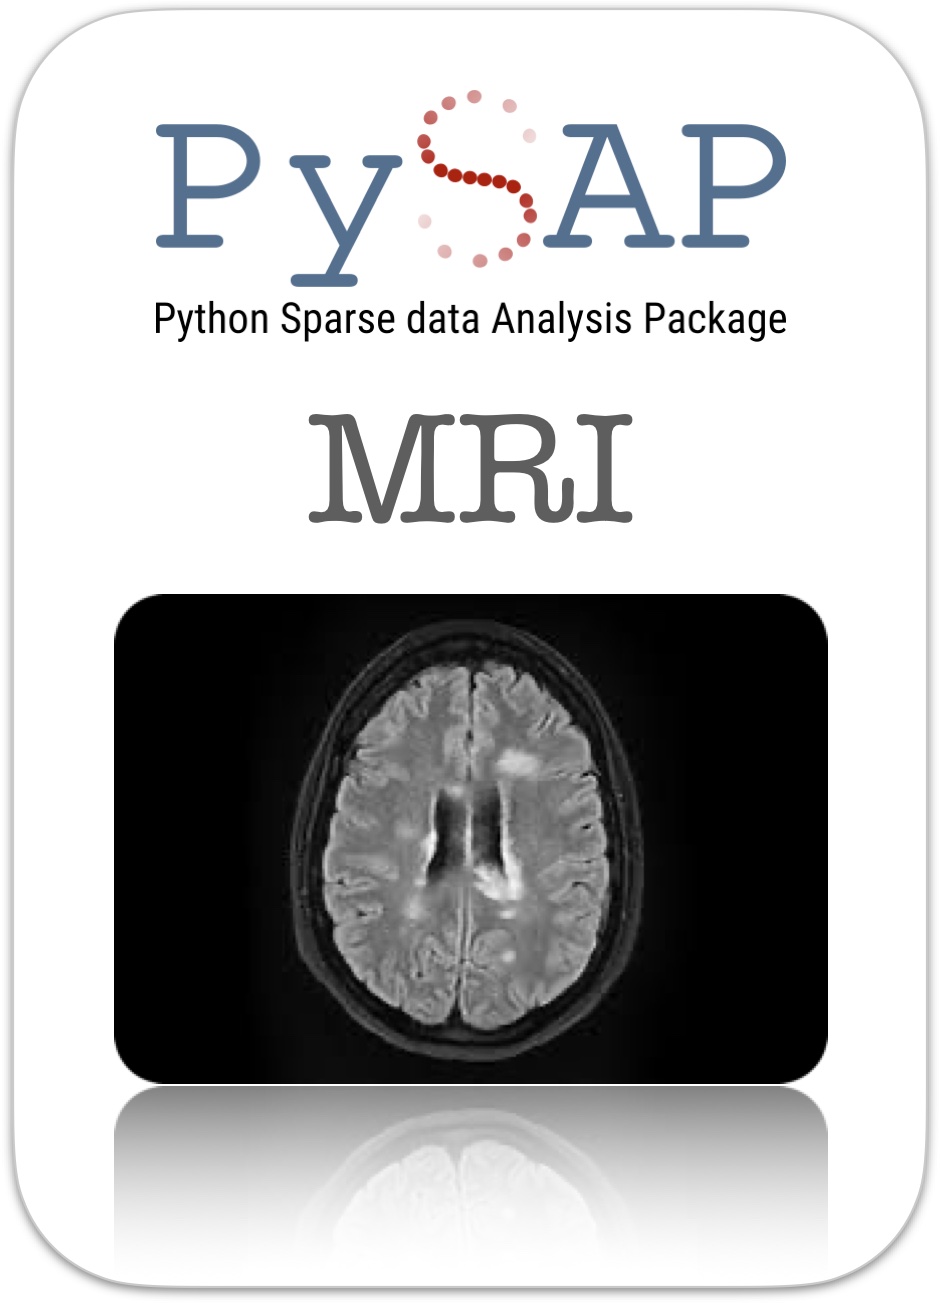 PySAP-MRI